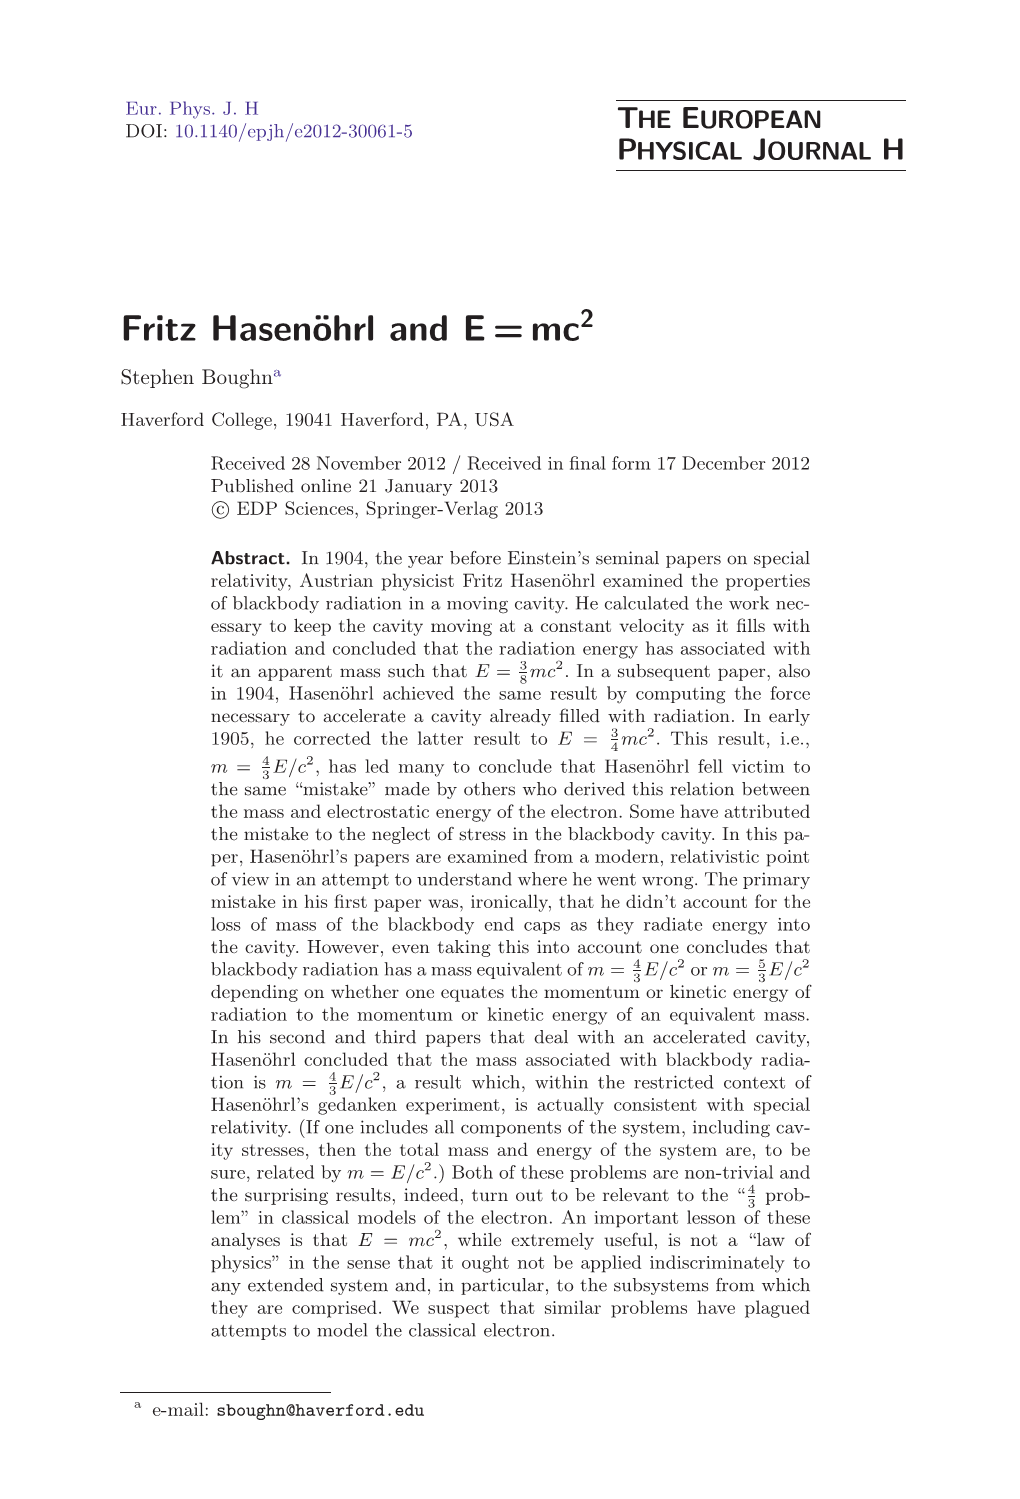 Fritz Hasenöhrl and E=Mc2